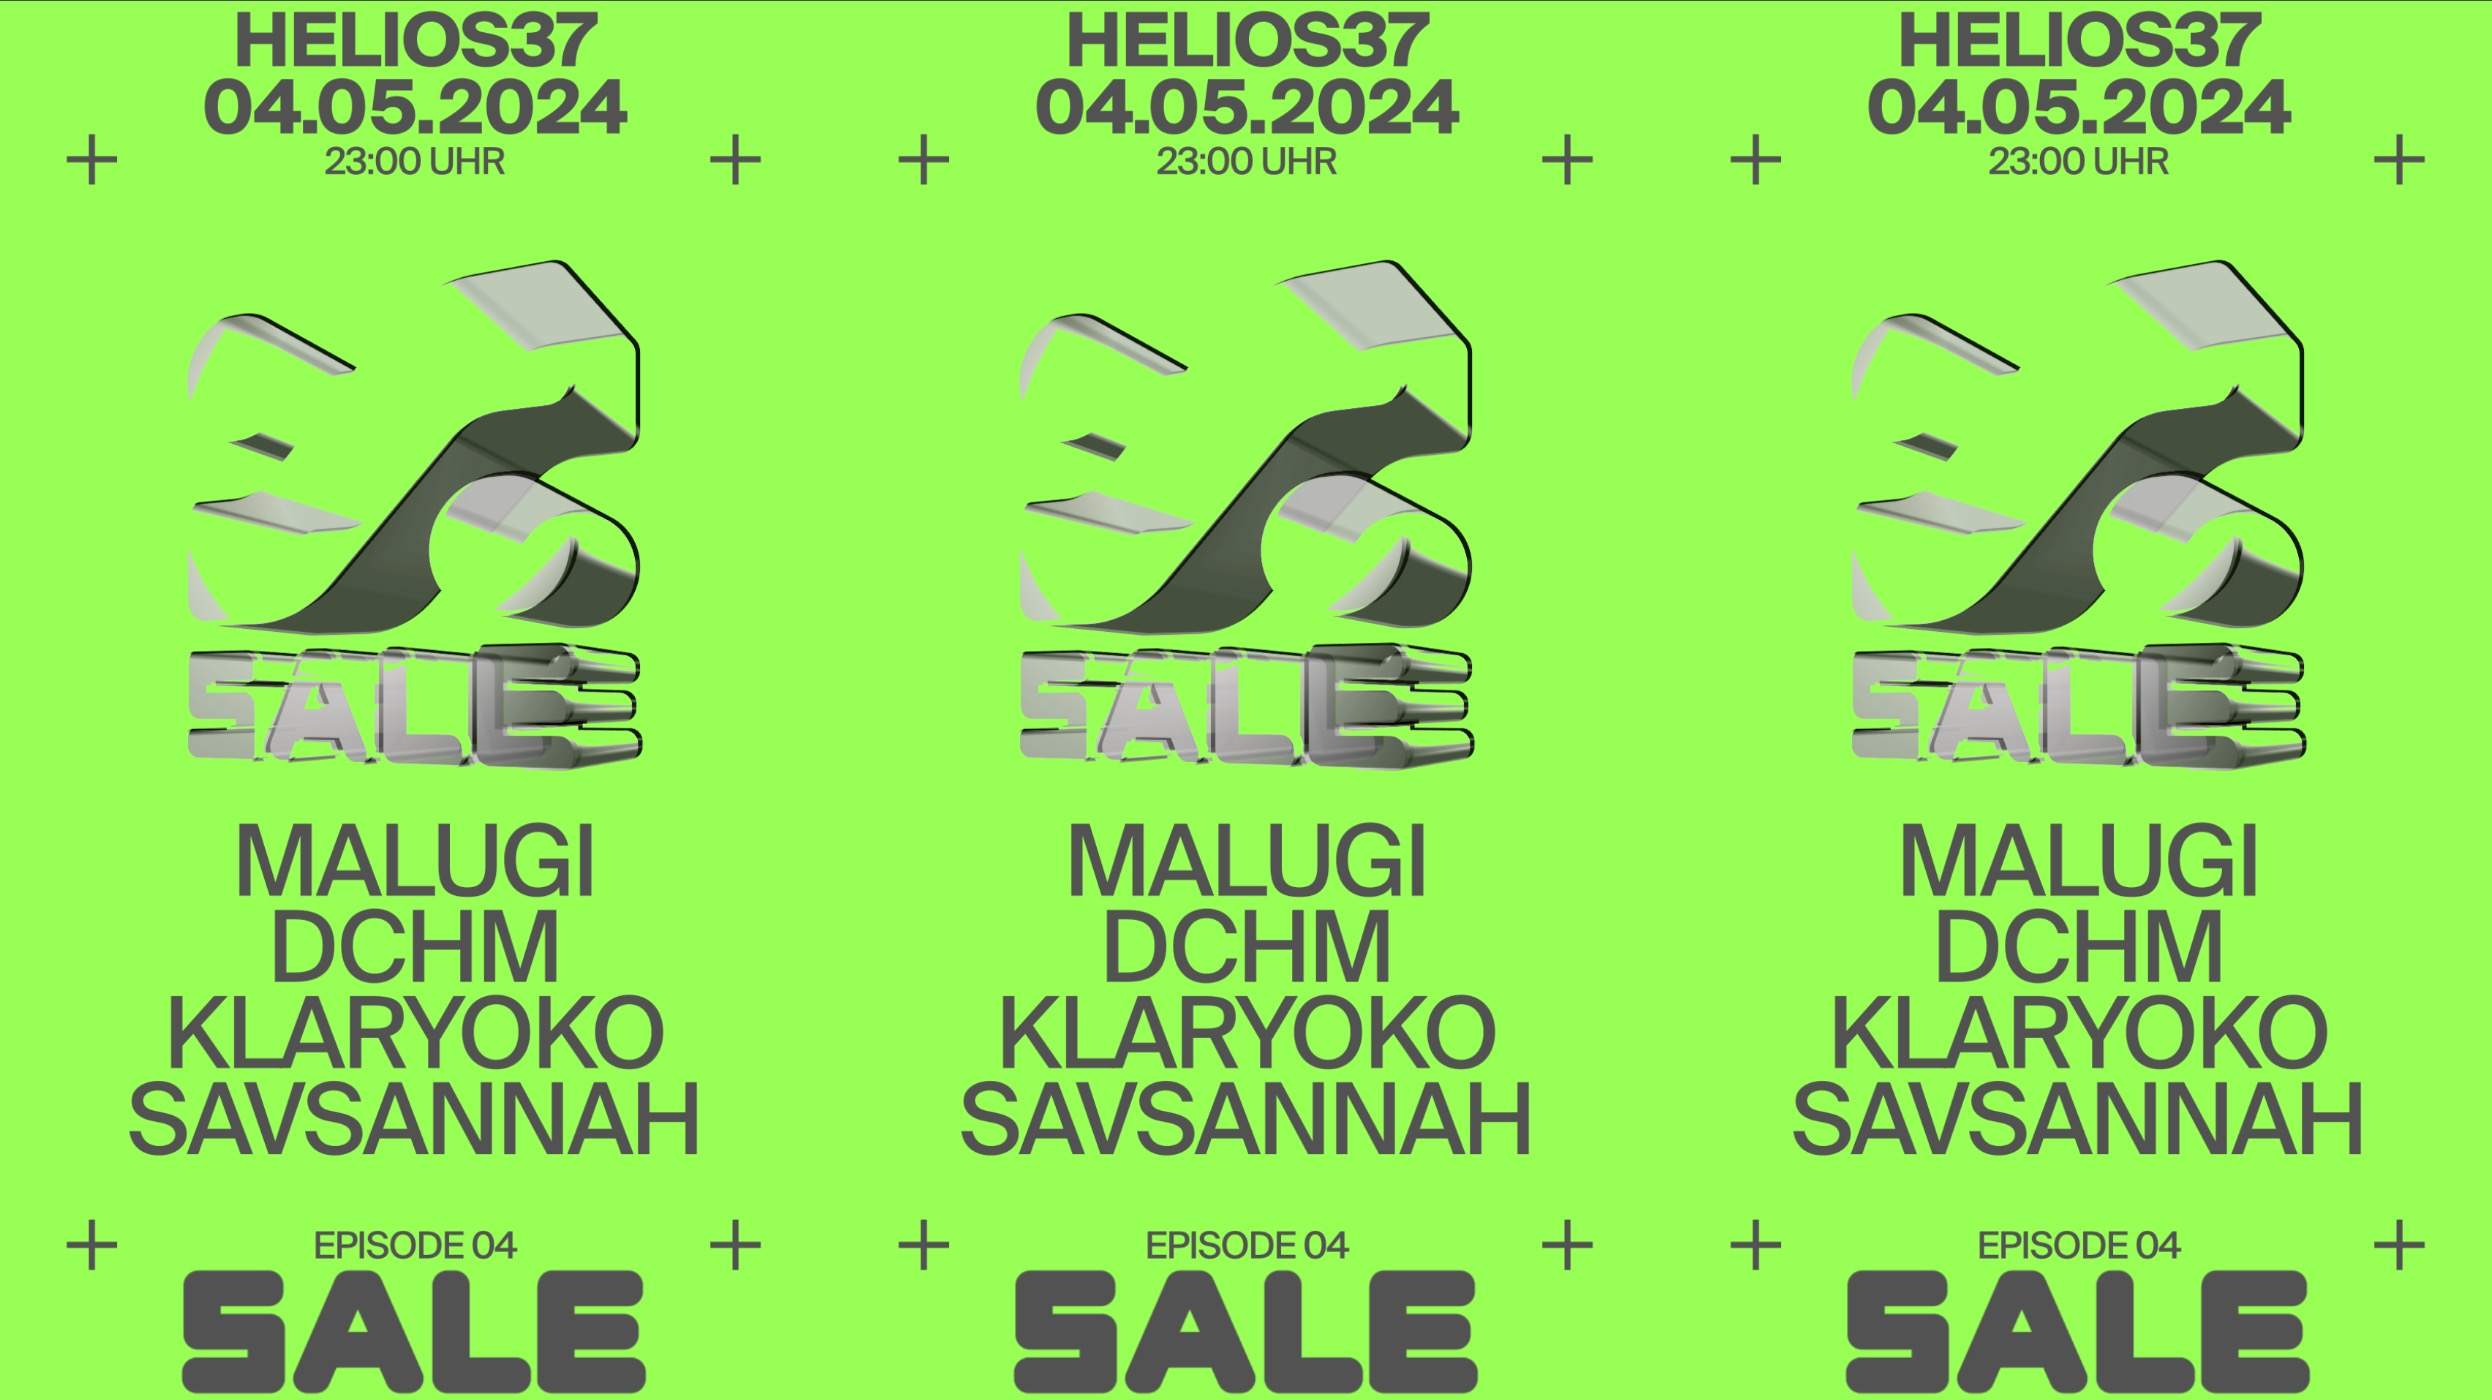 SALE with MALUGI, DCHM, KLARYOKO, SAVSANNAH - フライヤー表